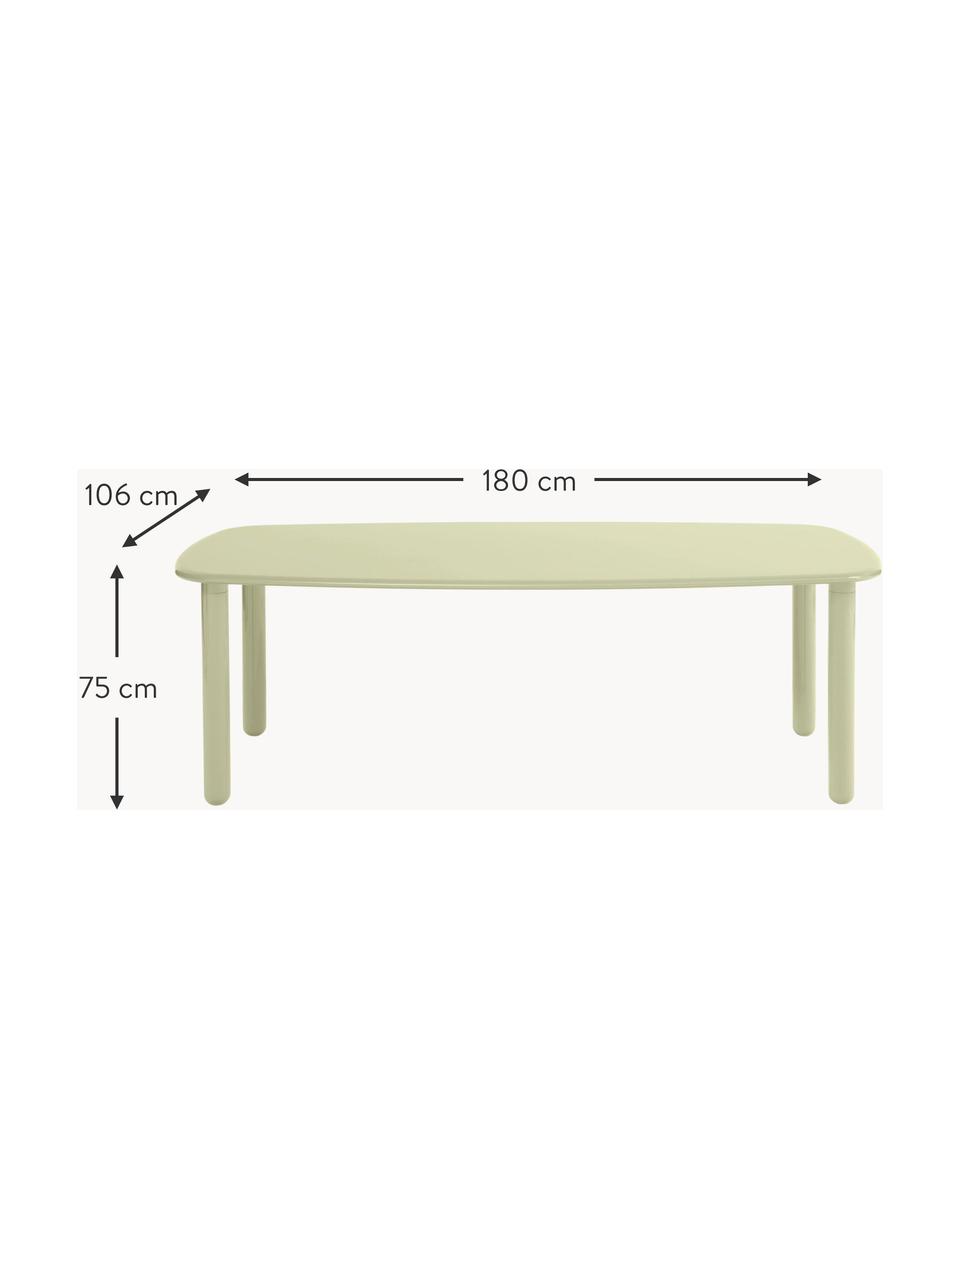 Drevený jedálenský stôl Tottori, Lakovaná MDF-doska strednej hustoty, Drevo, svetlozelená lakované, Š 180 x H 106 cm